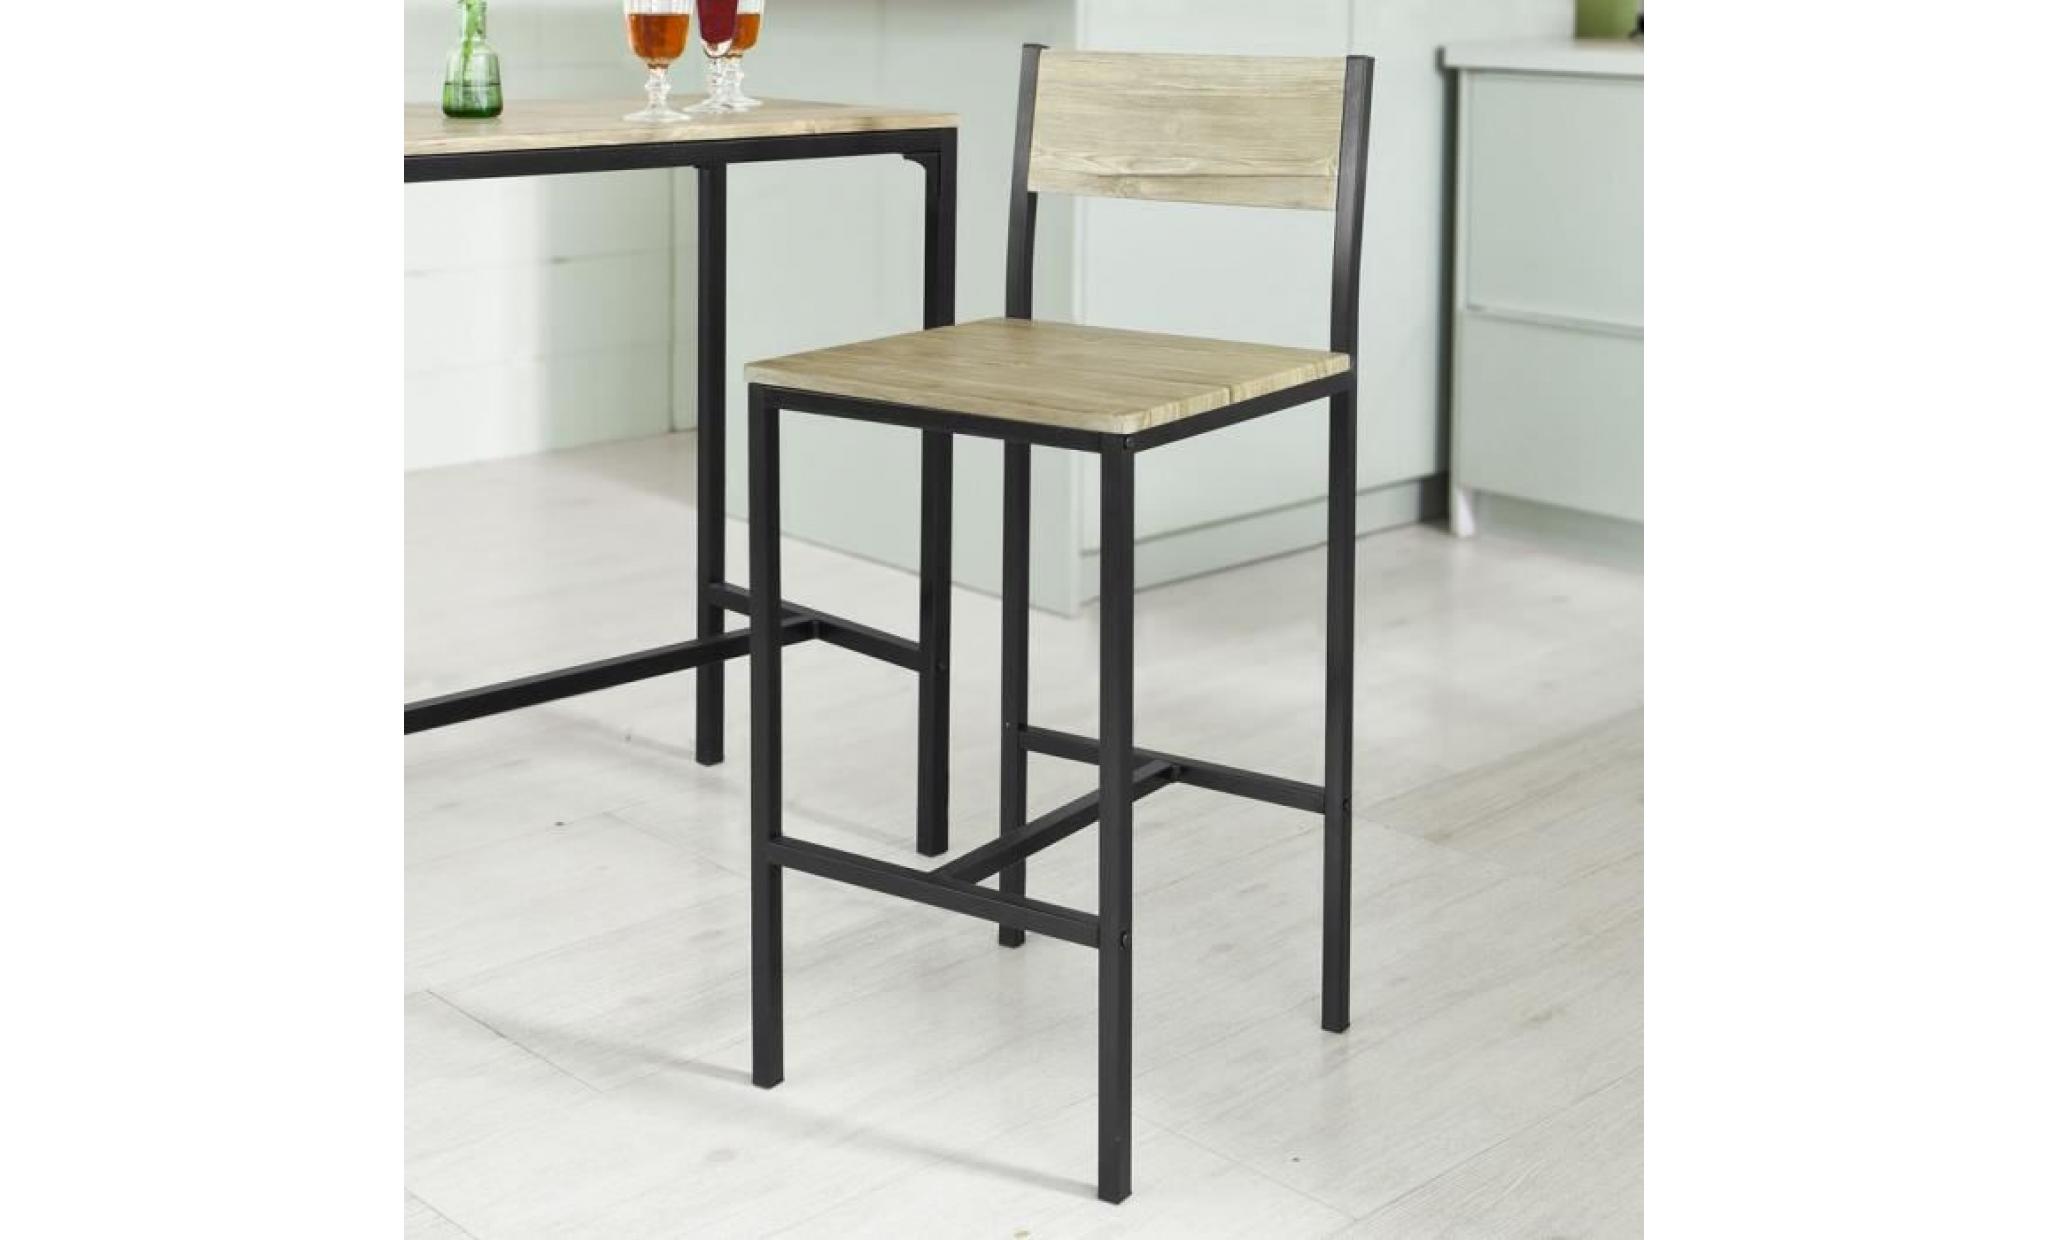 sobuy® ogt03 ensemble table de bar + 2 chaises, set de 1 table + 2 chaises, table haute cuisine pas cher